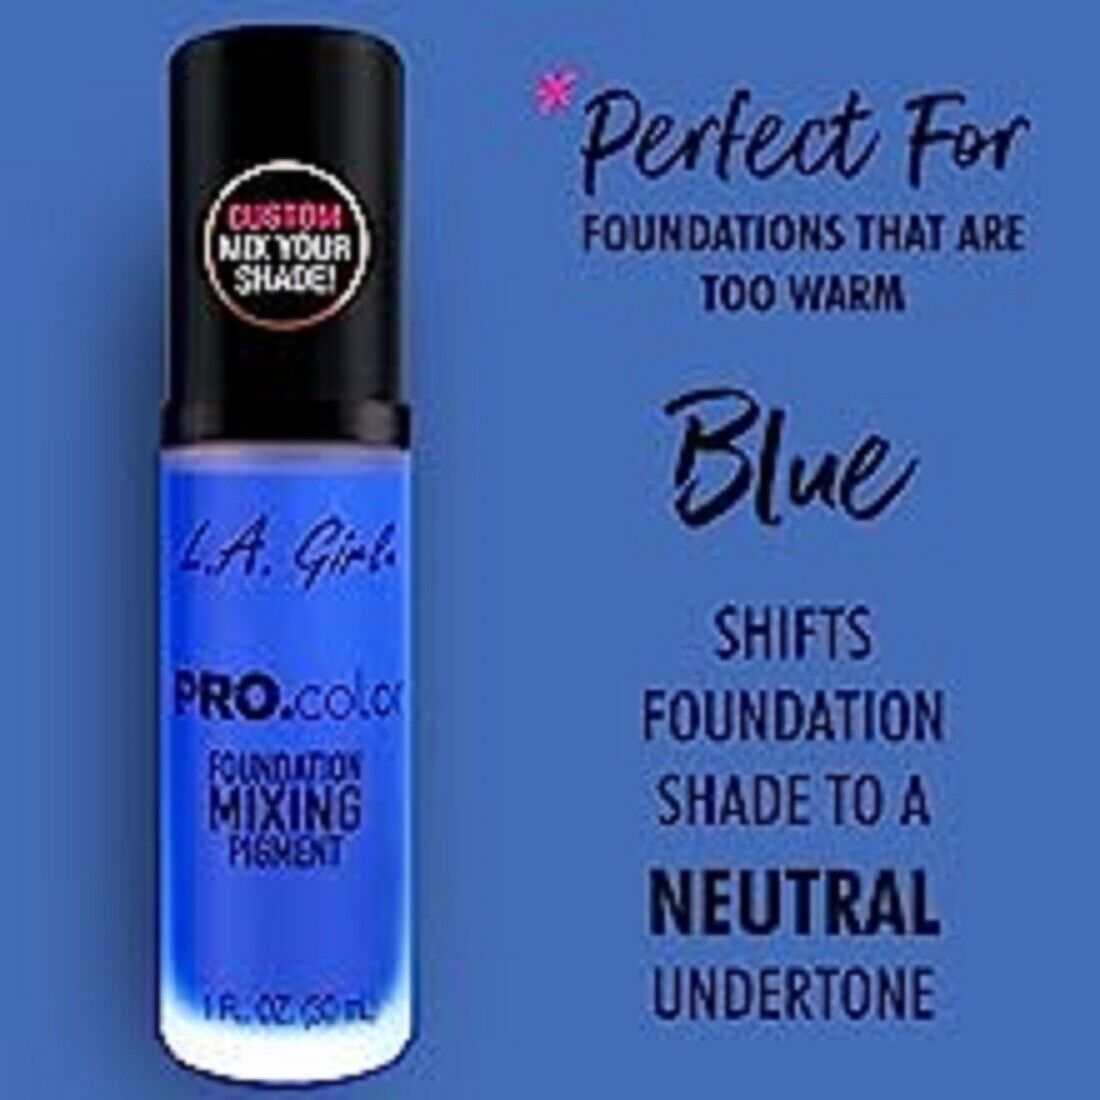 LA Girl Pro.Color Foundation Mixing Pigment - Blue 